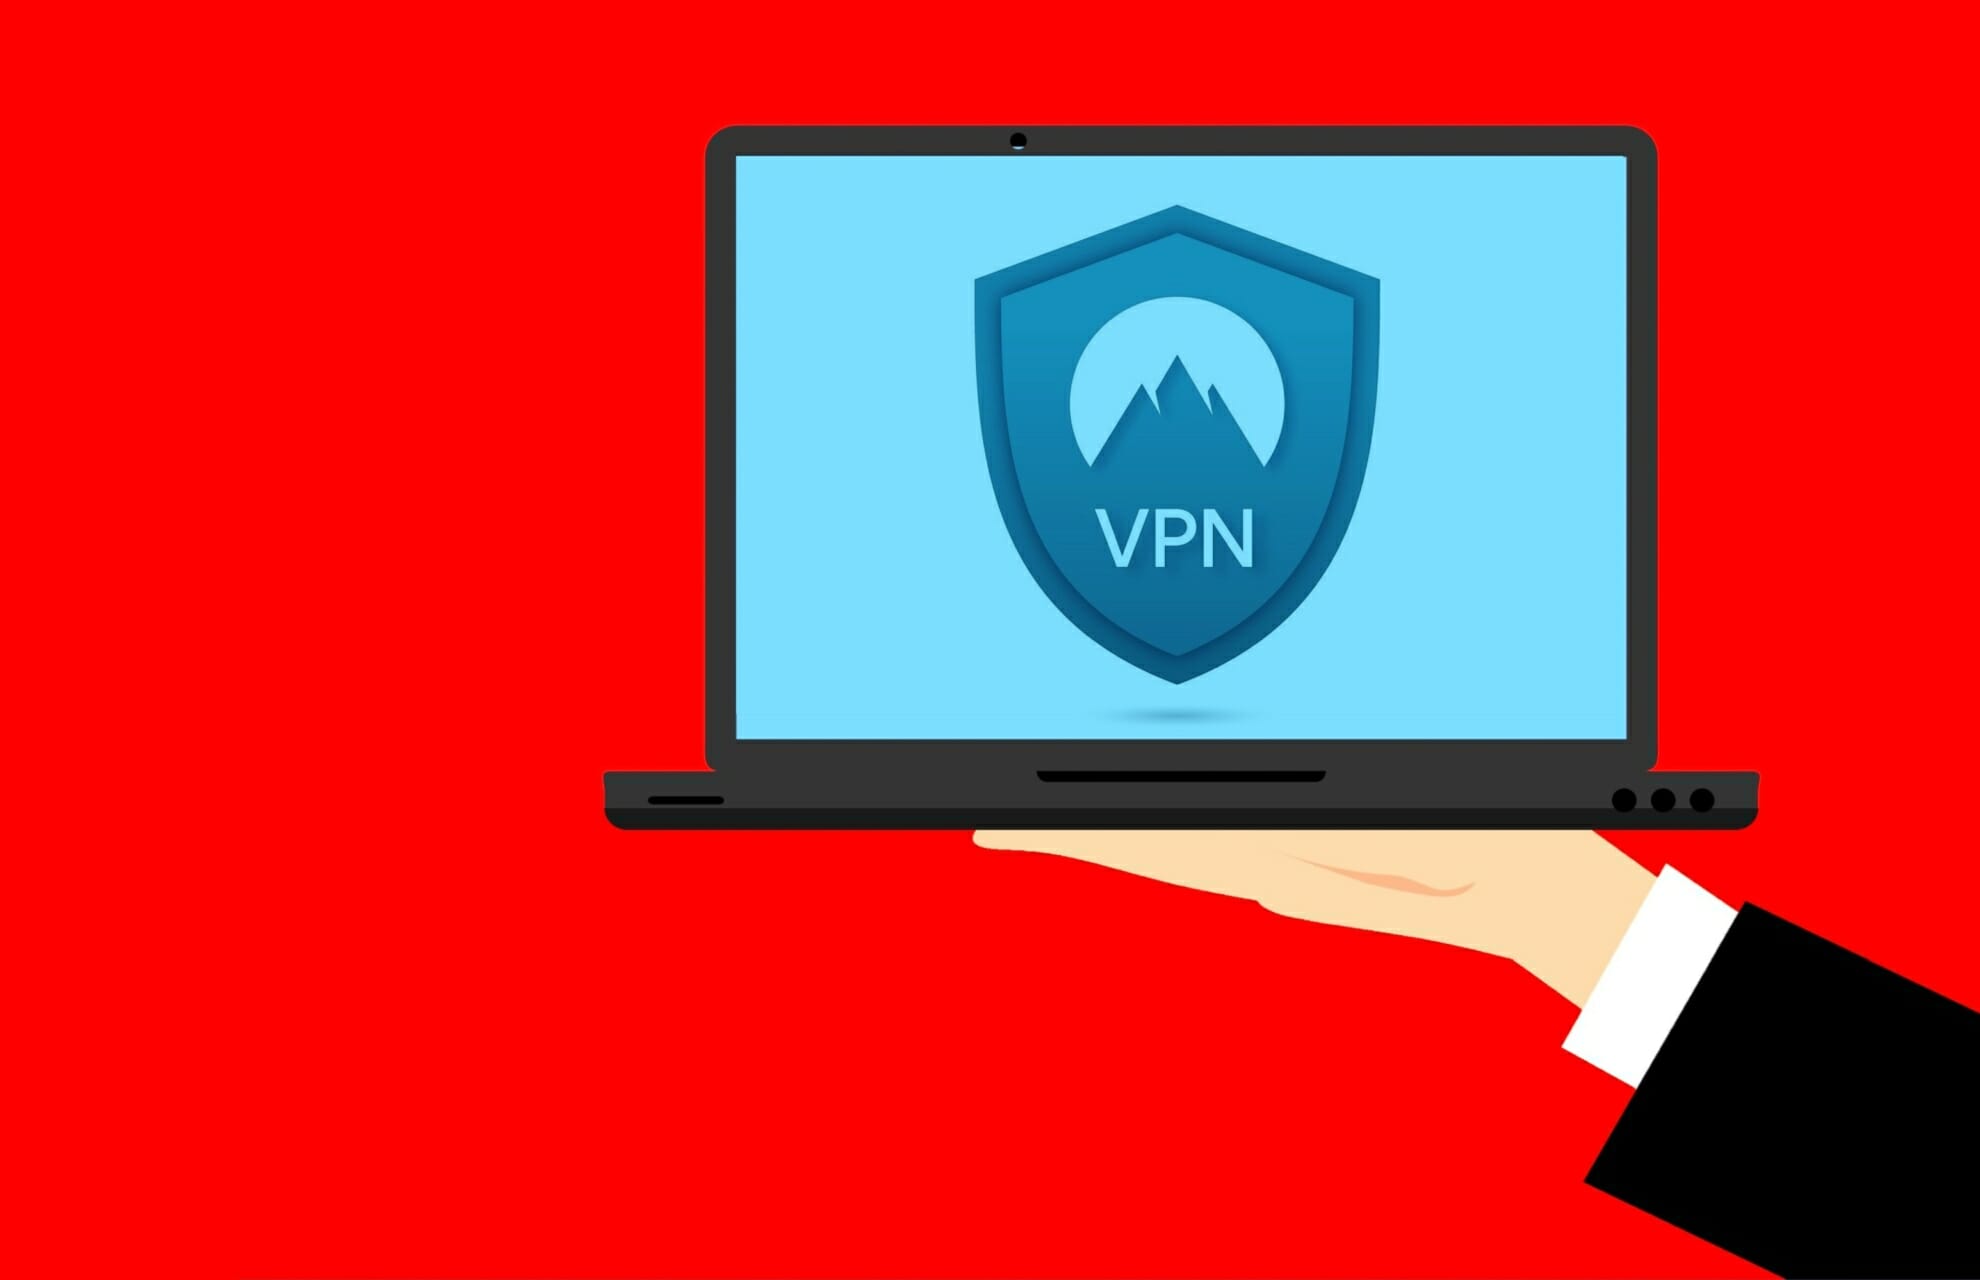 Can't access VPN websites?